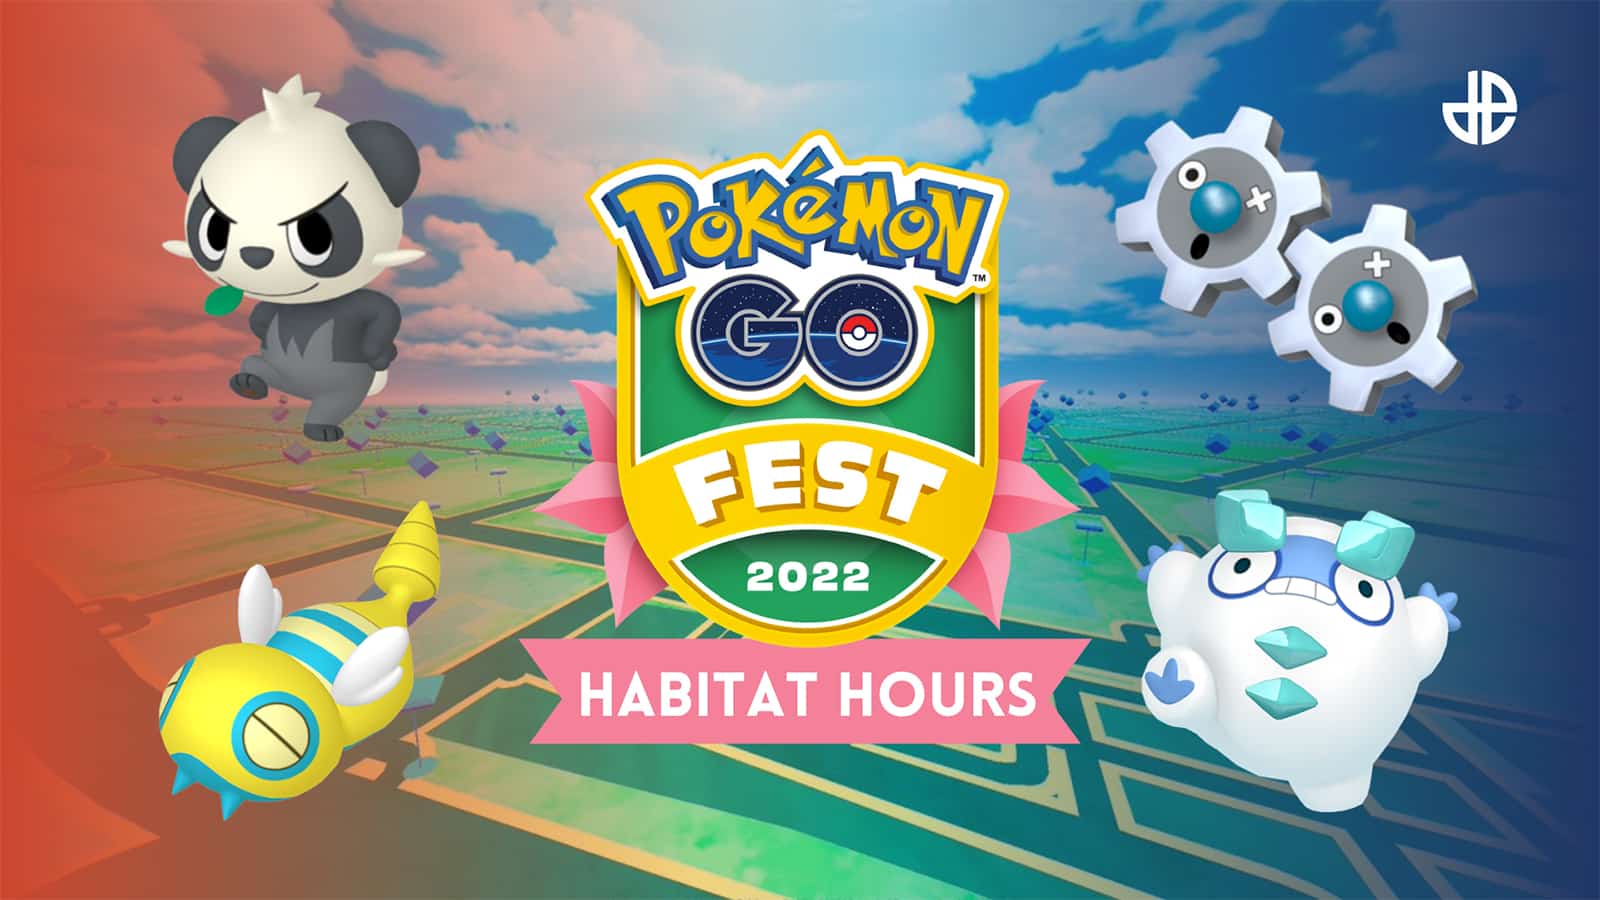 A poster for the Habitat Hours in Pokemon Go Fest 2022